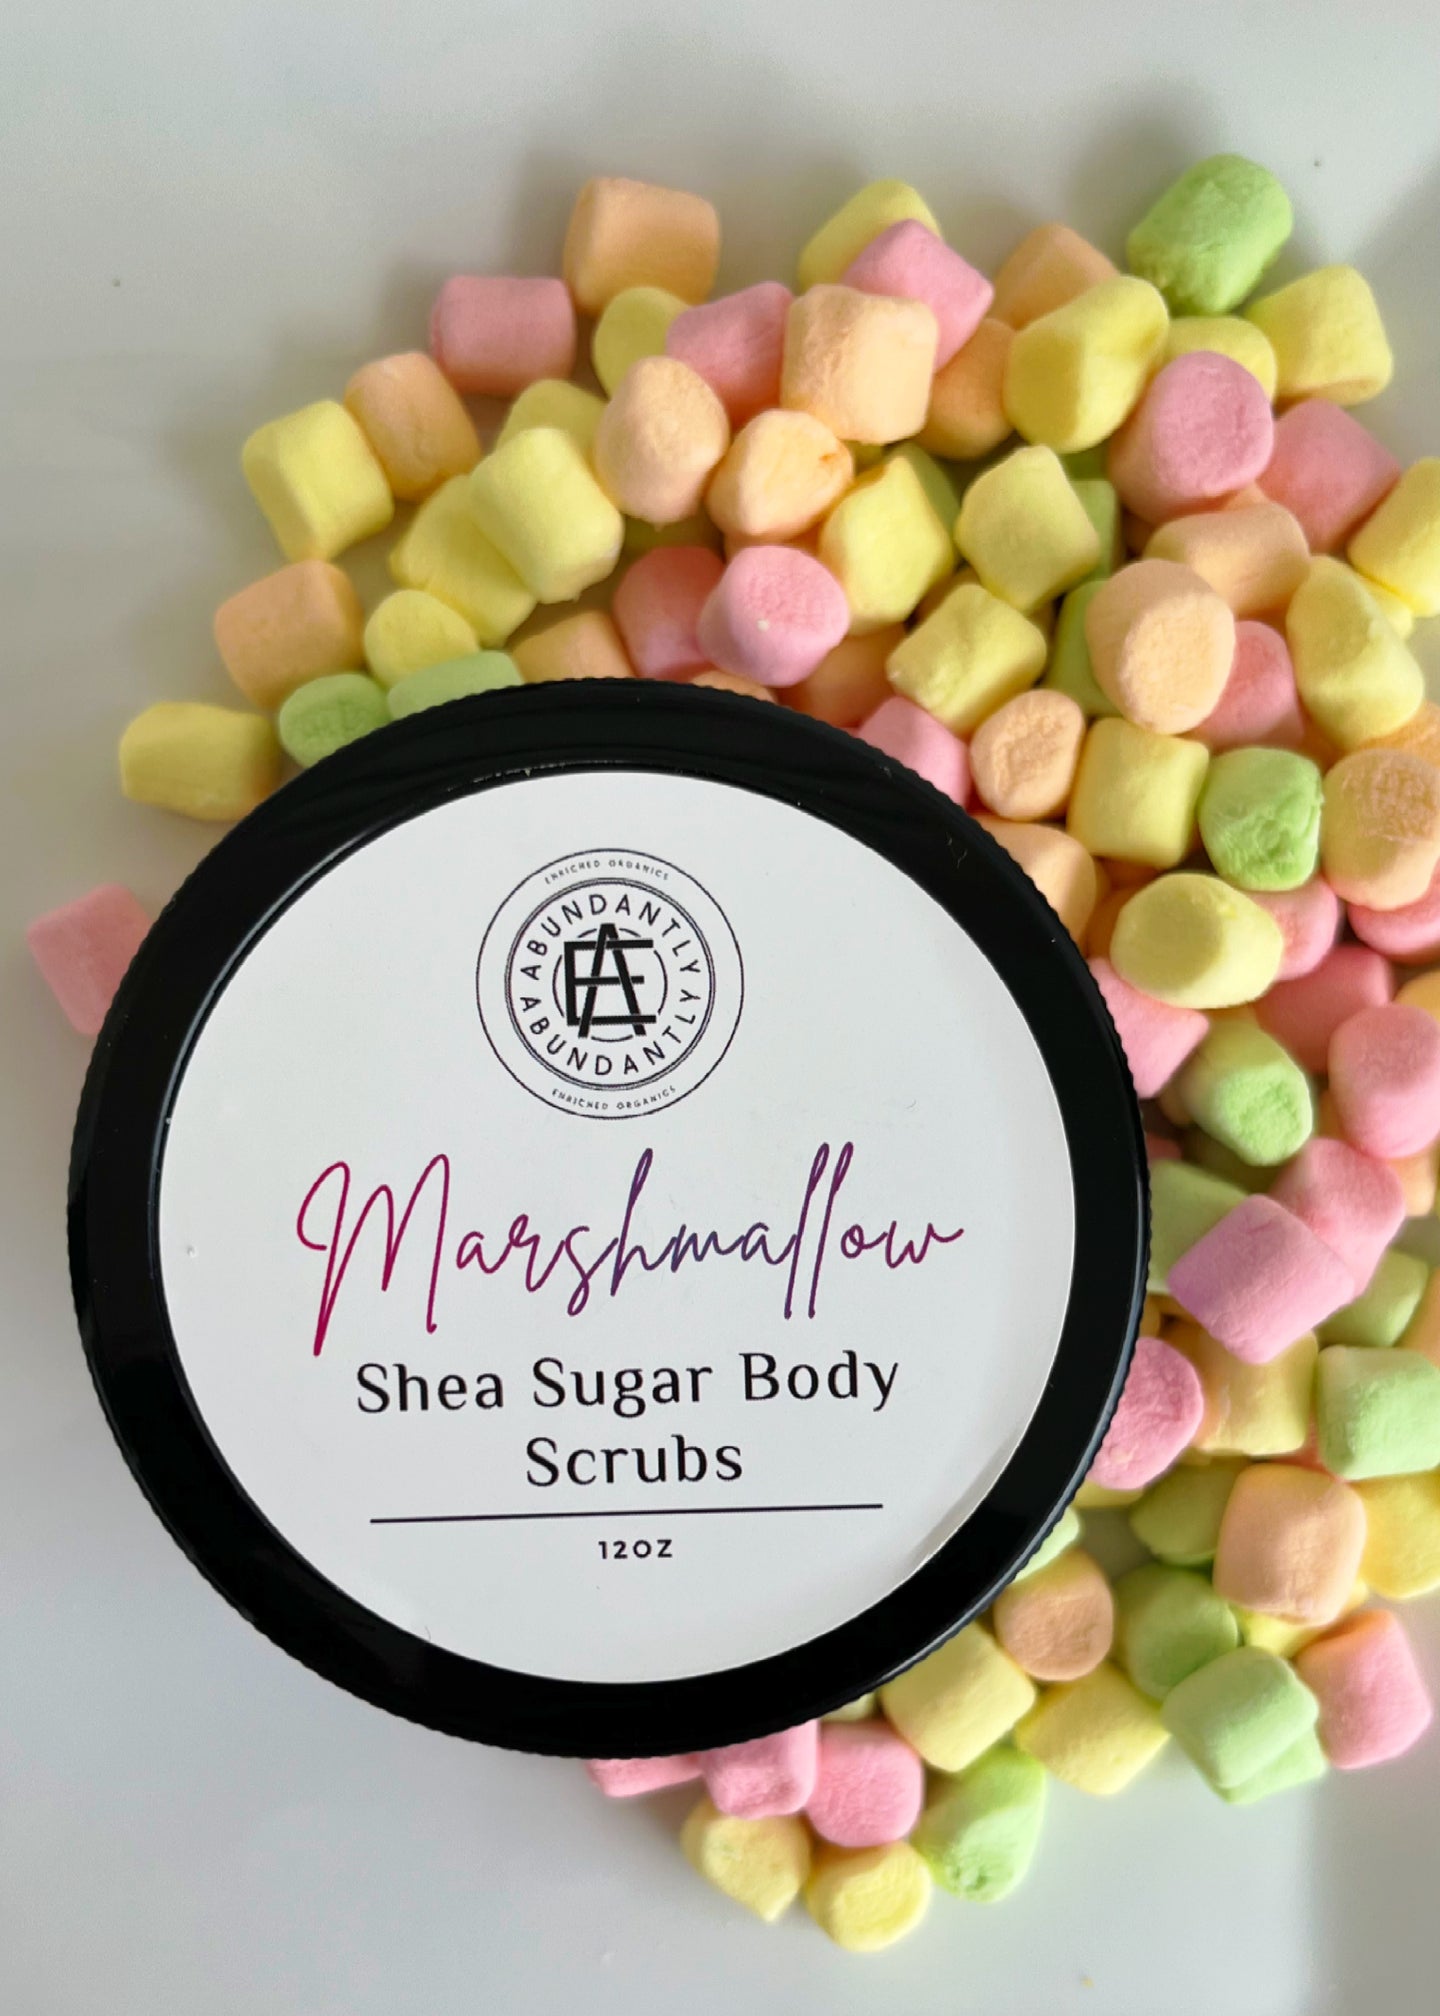 Marshmallow Shea Sugar Scrubs